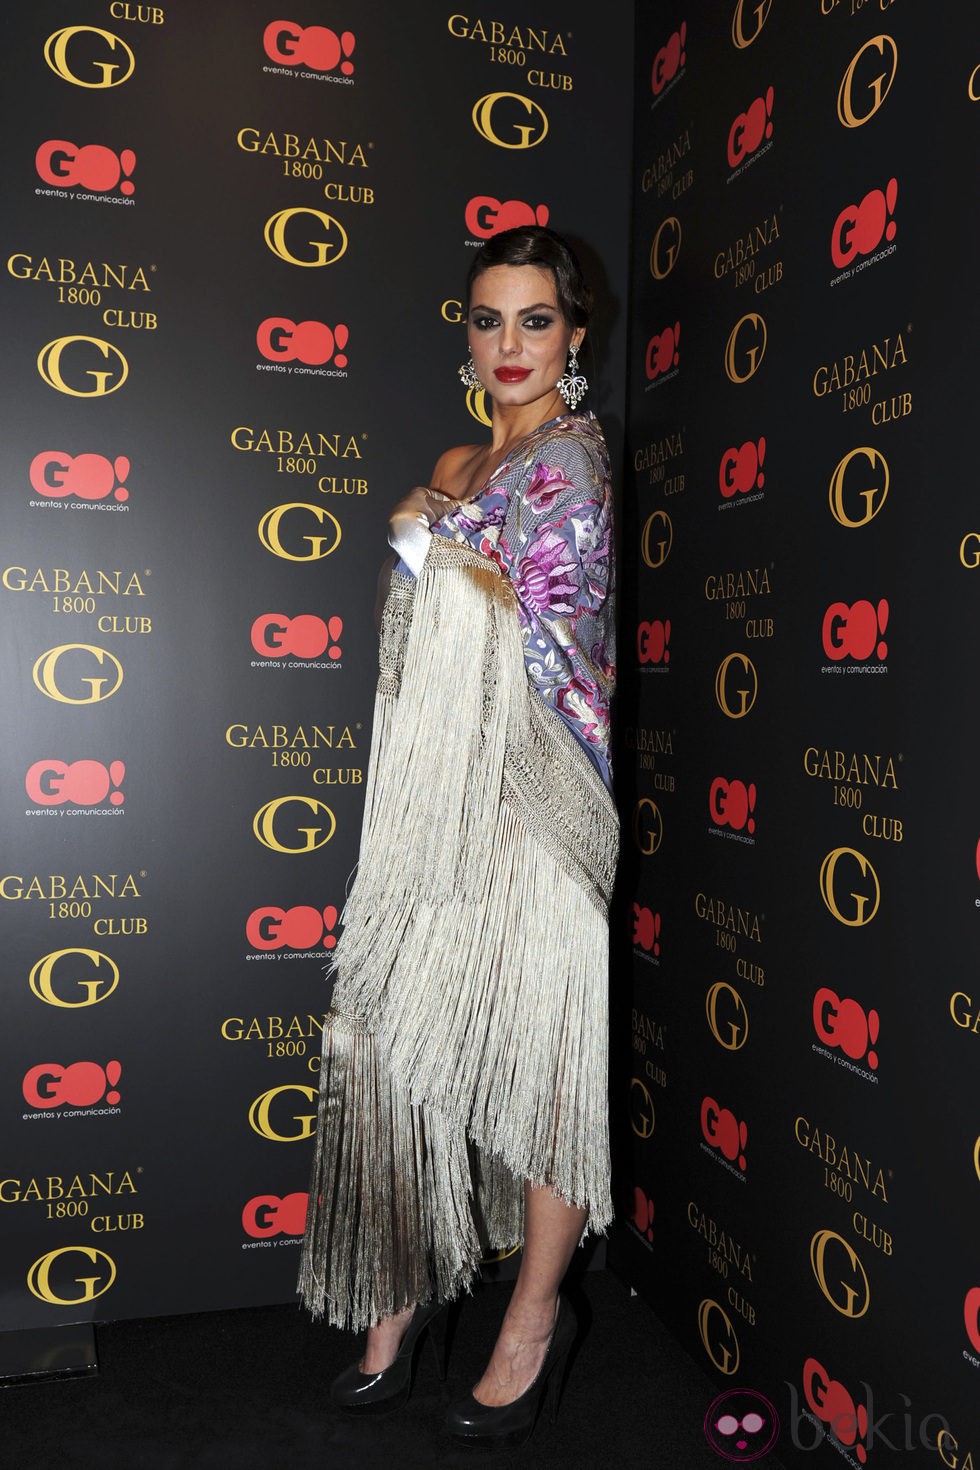 Marisa Jara en un desfile de moda flamenca en Madrid